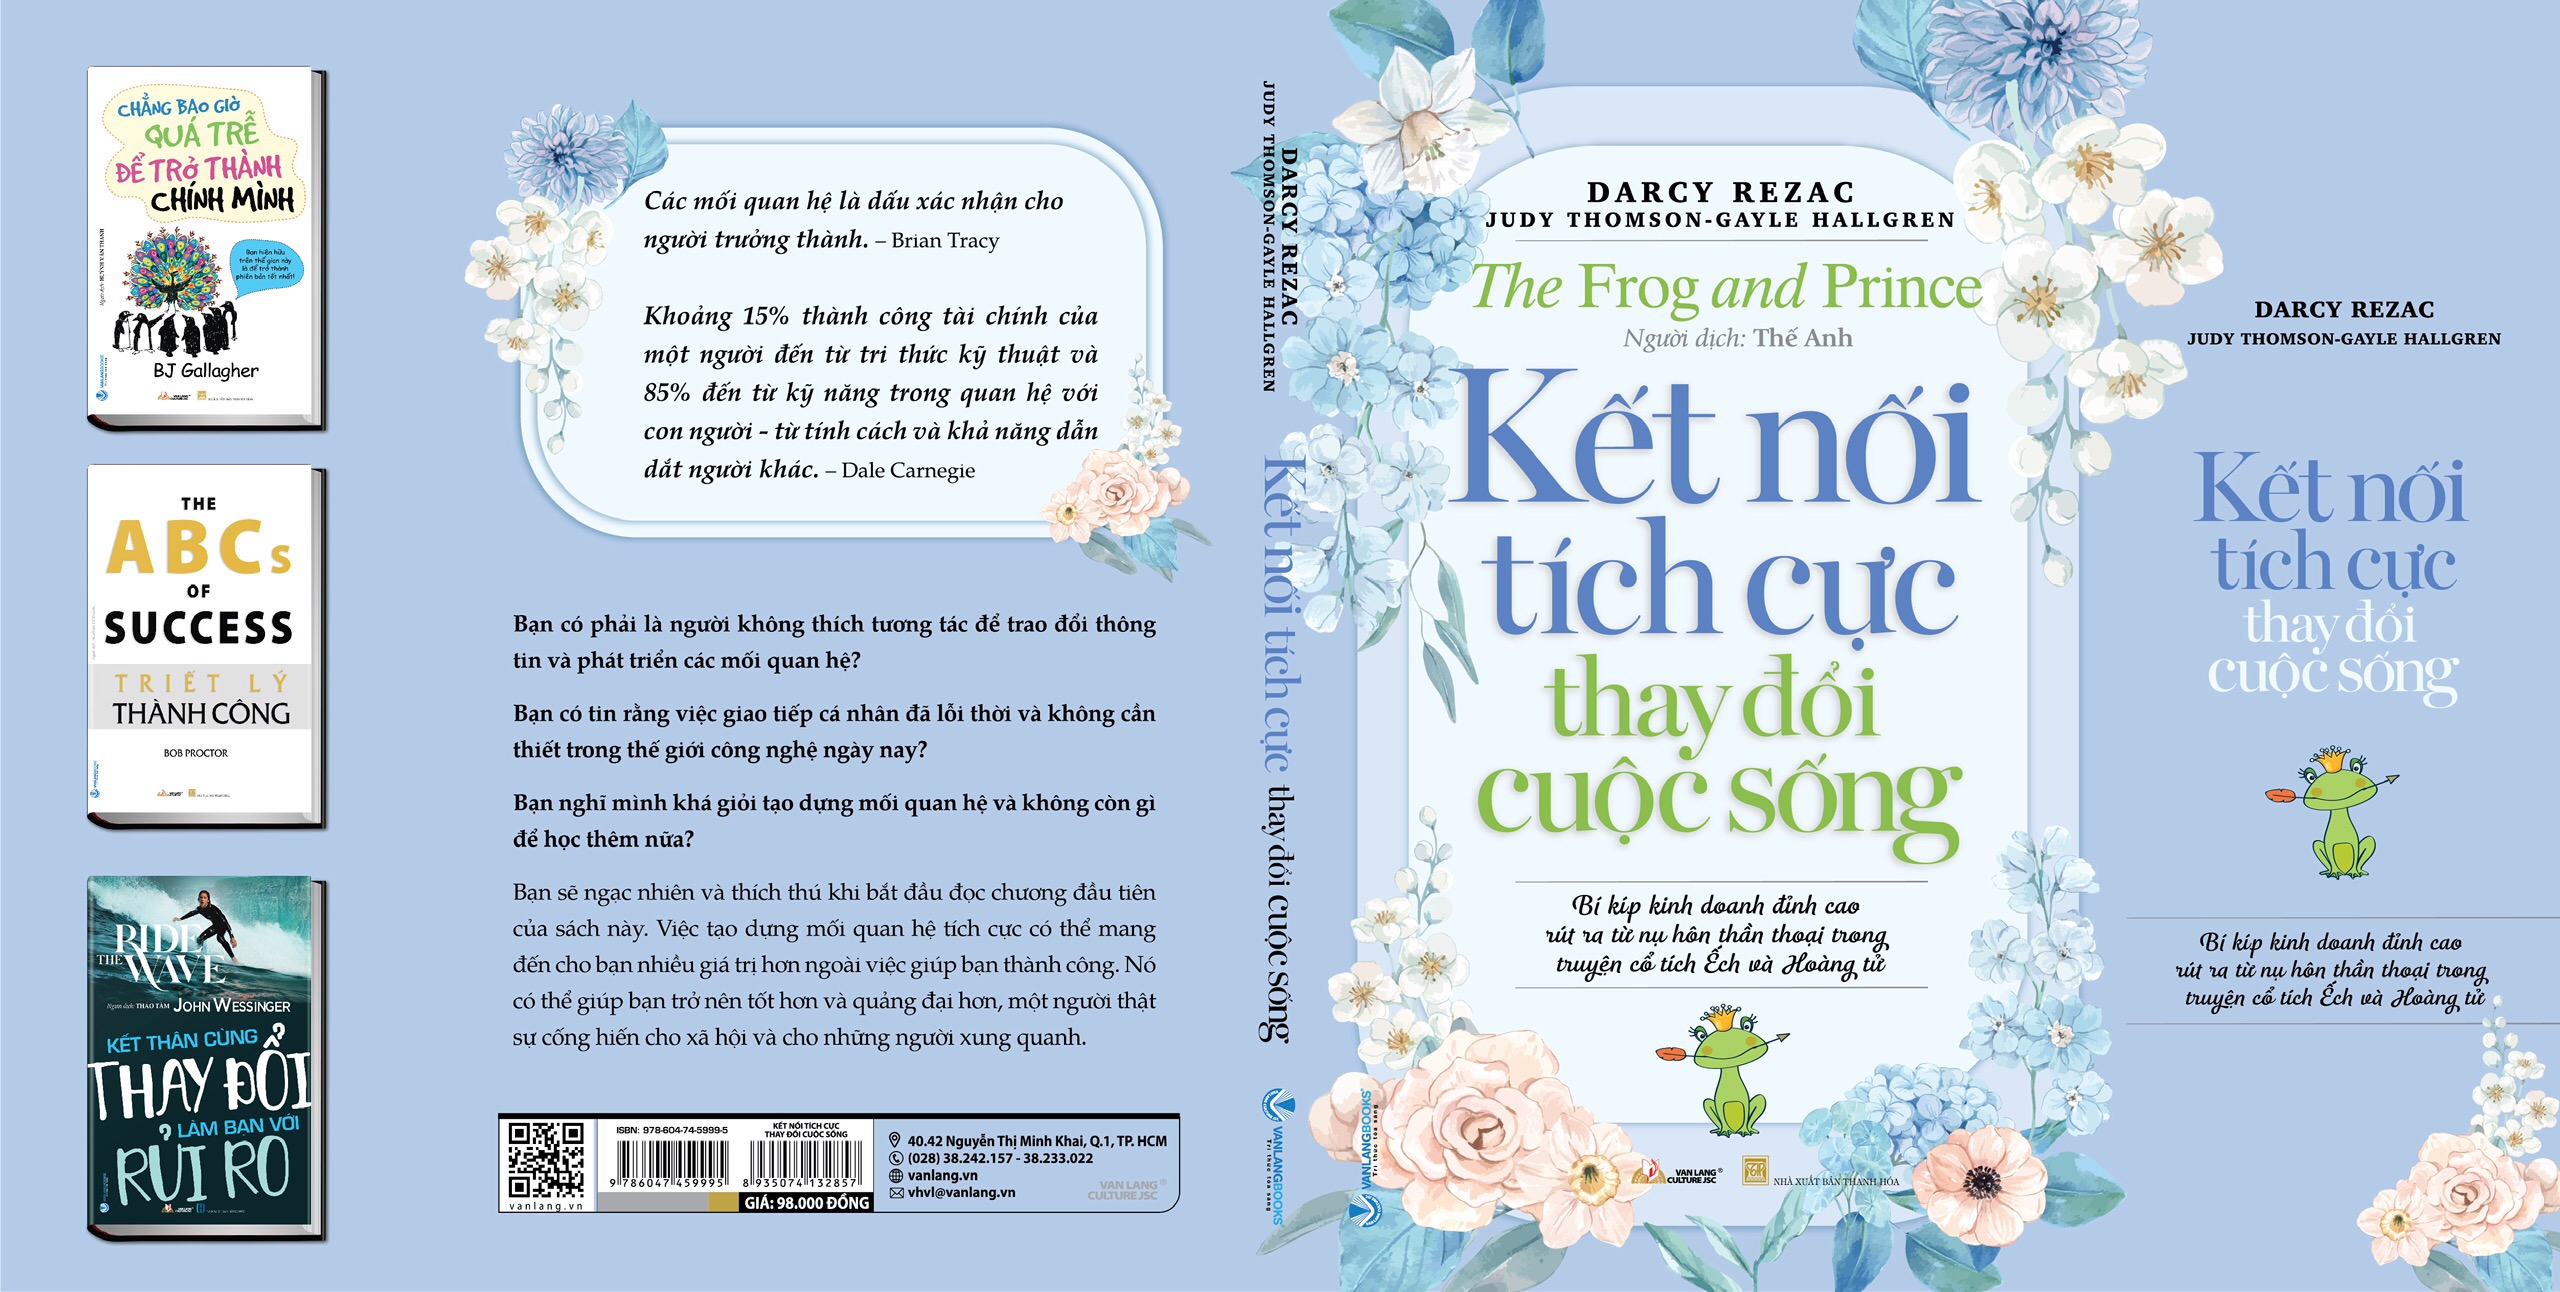 KẾT NỐI TÍCH CỰC THAY ĐỔI CUỘC SỐNG (The Frog and Prince) - Darcy Rezac, Judy Thomson, Gayle Hallgren - Thế Anh dịch - (bìa mềm)